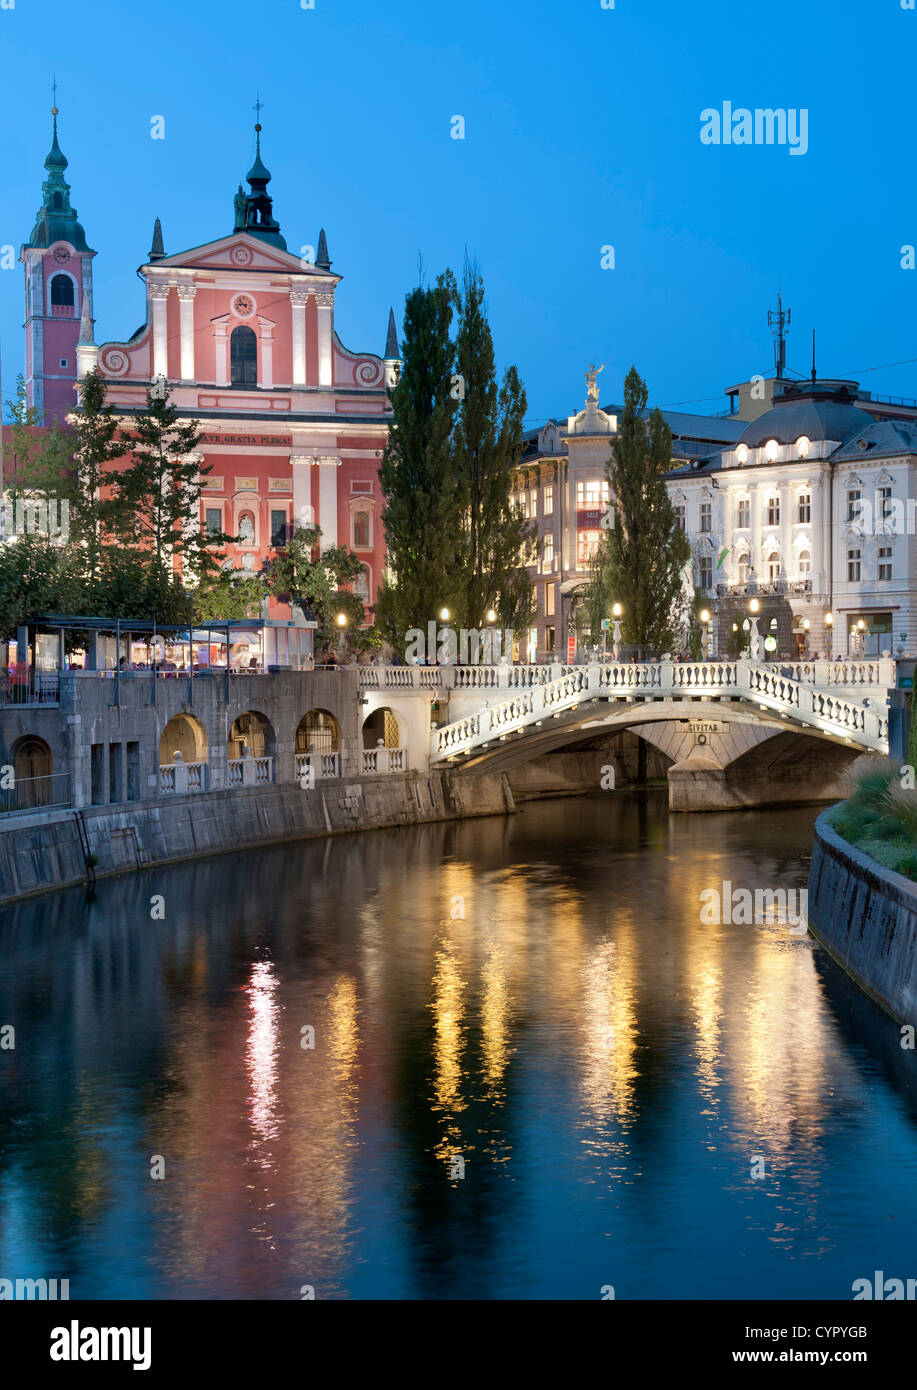 La iglesia franciscana de la Anunciación y el Triple Puente sobre el río Ljubljanica en Ljubljana, la capital de Eslovenia. Foto de stock